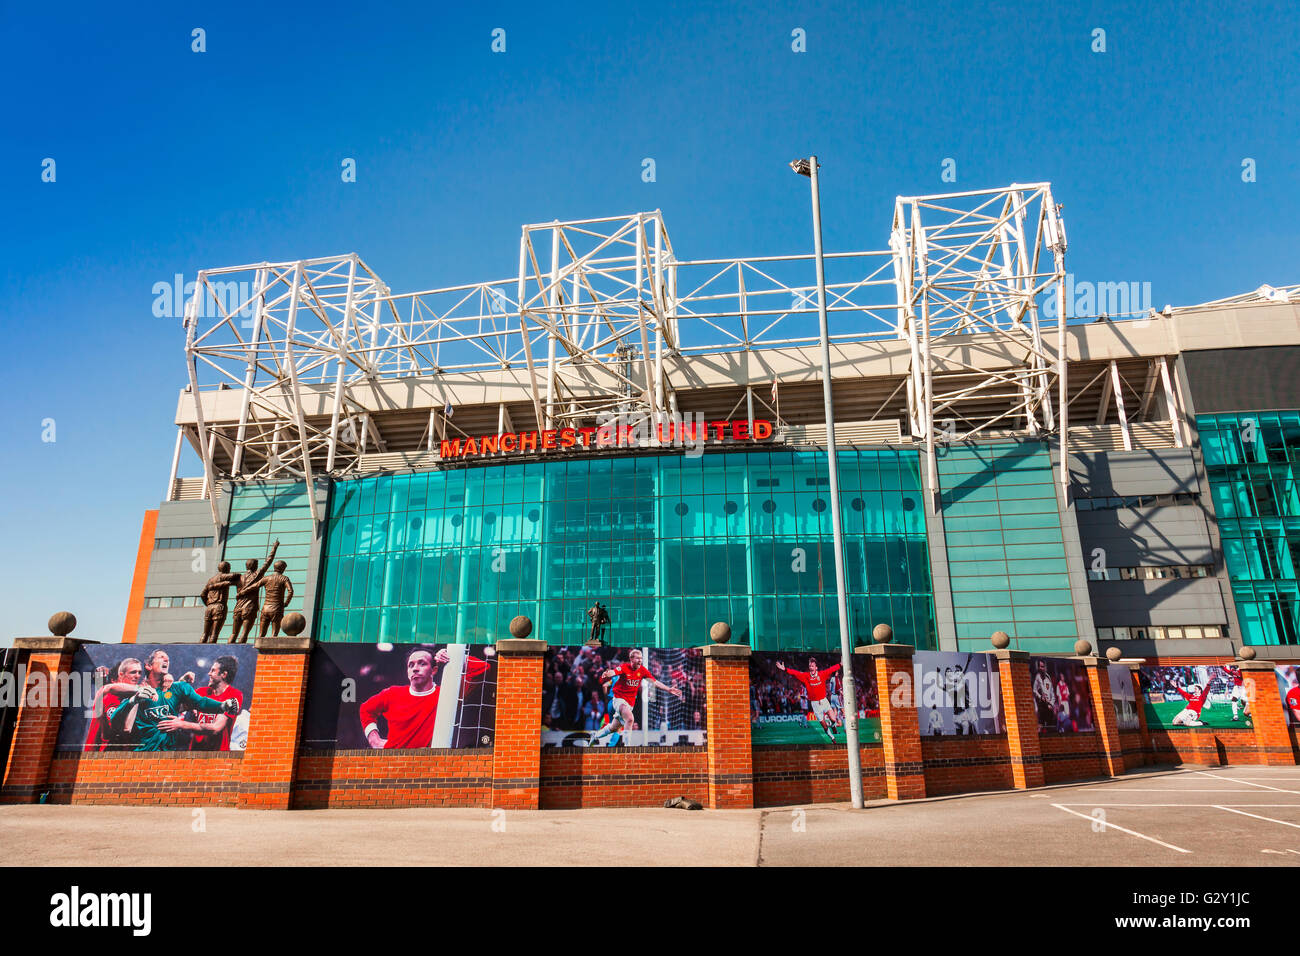 Das Stadion Old Trafford ist Heimat von Manchester United, eines der reichsten und am meisten verbreitete Fußball-der Welt Teams. Stockfoto